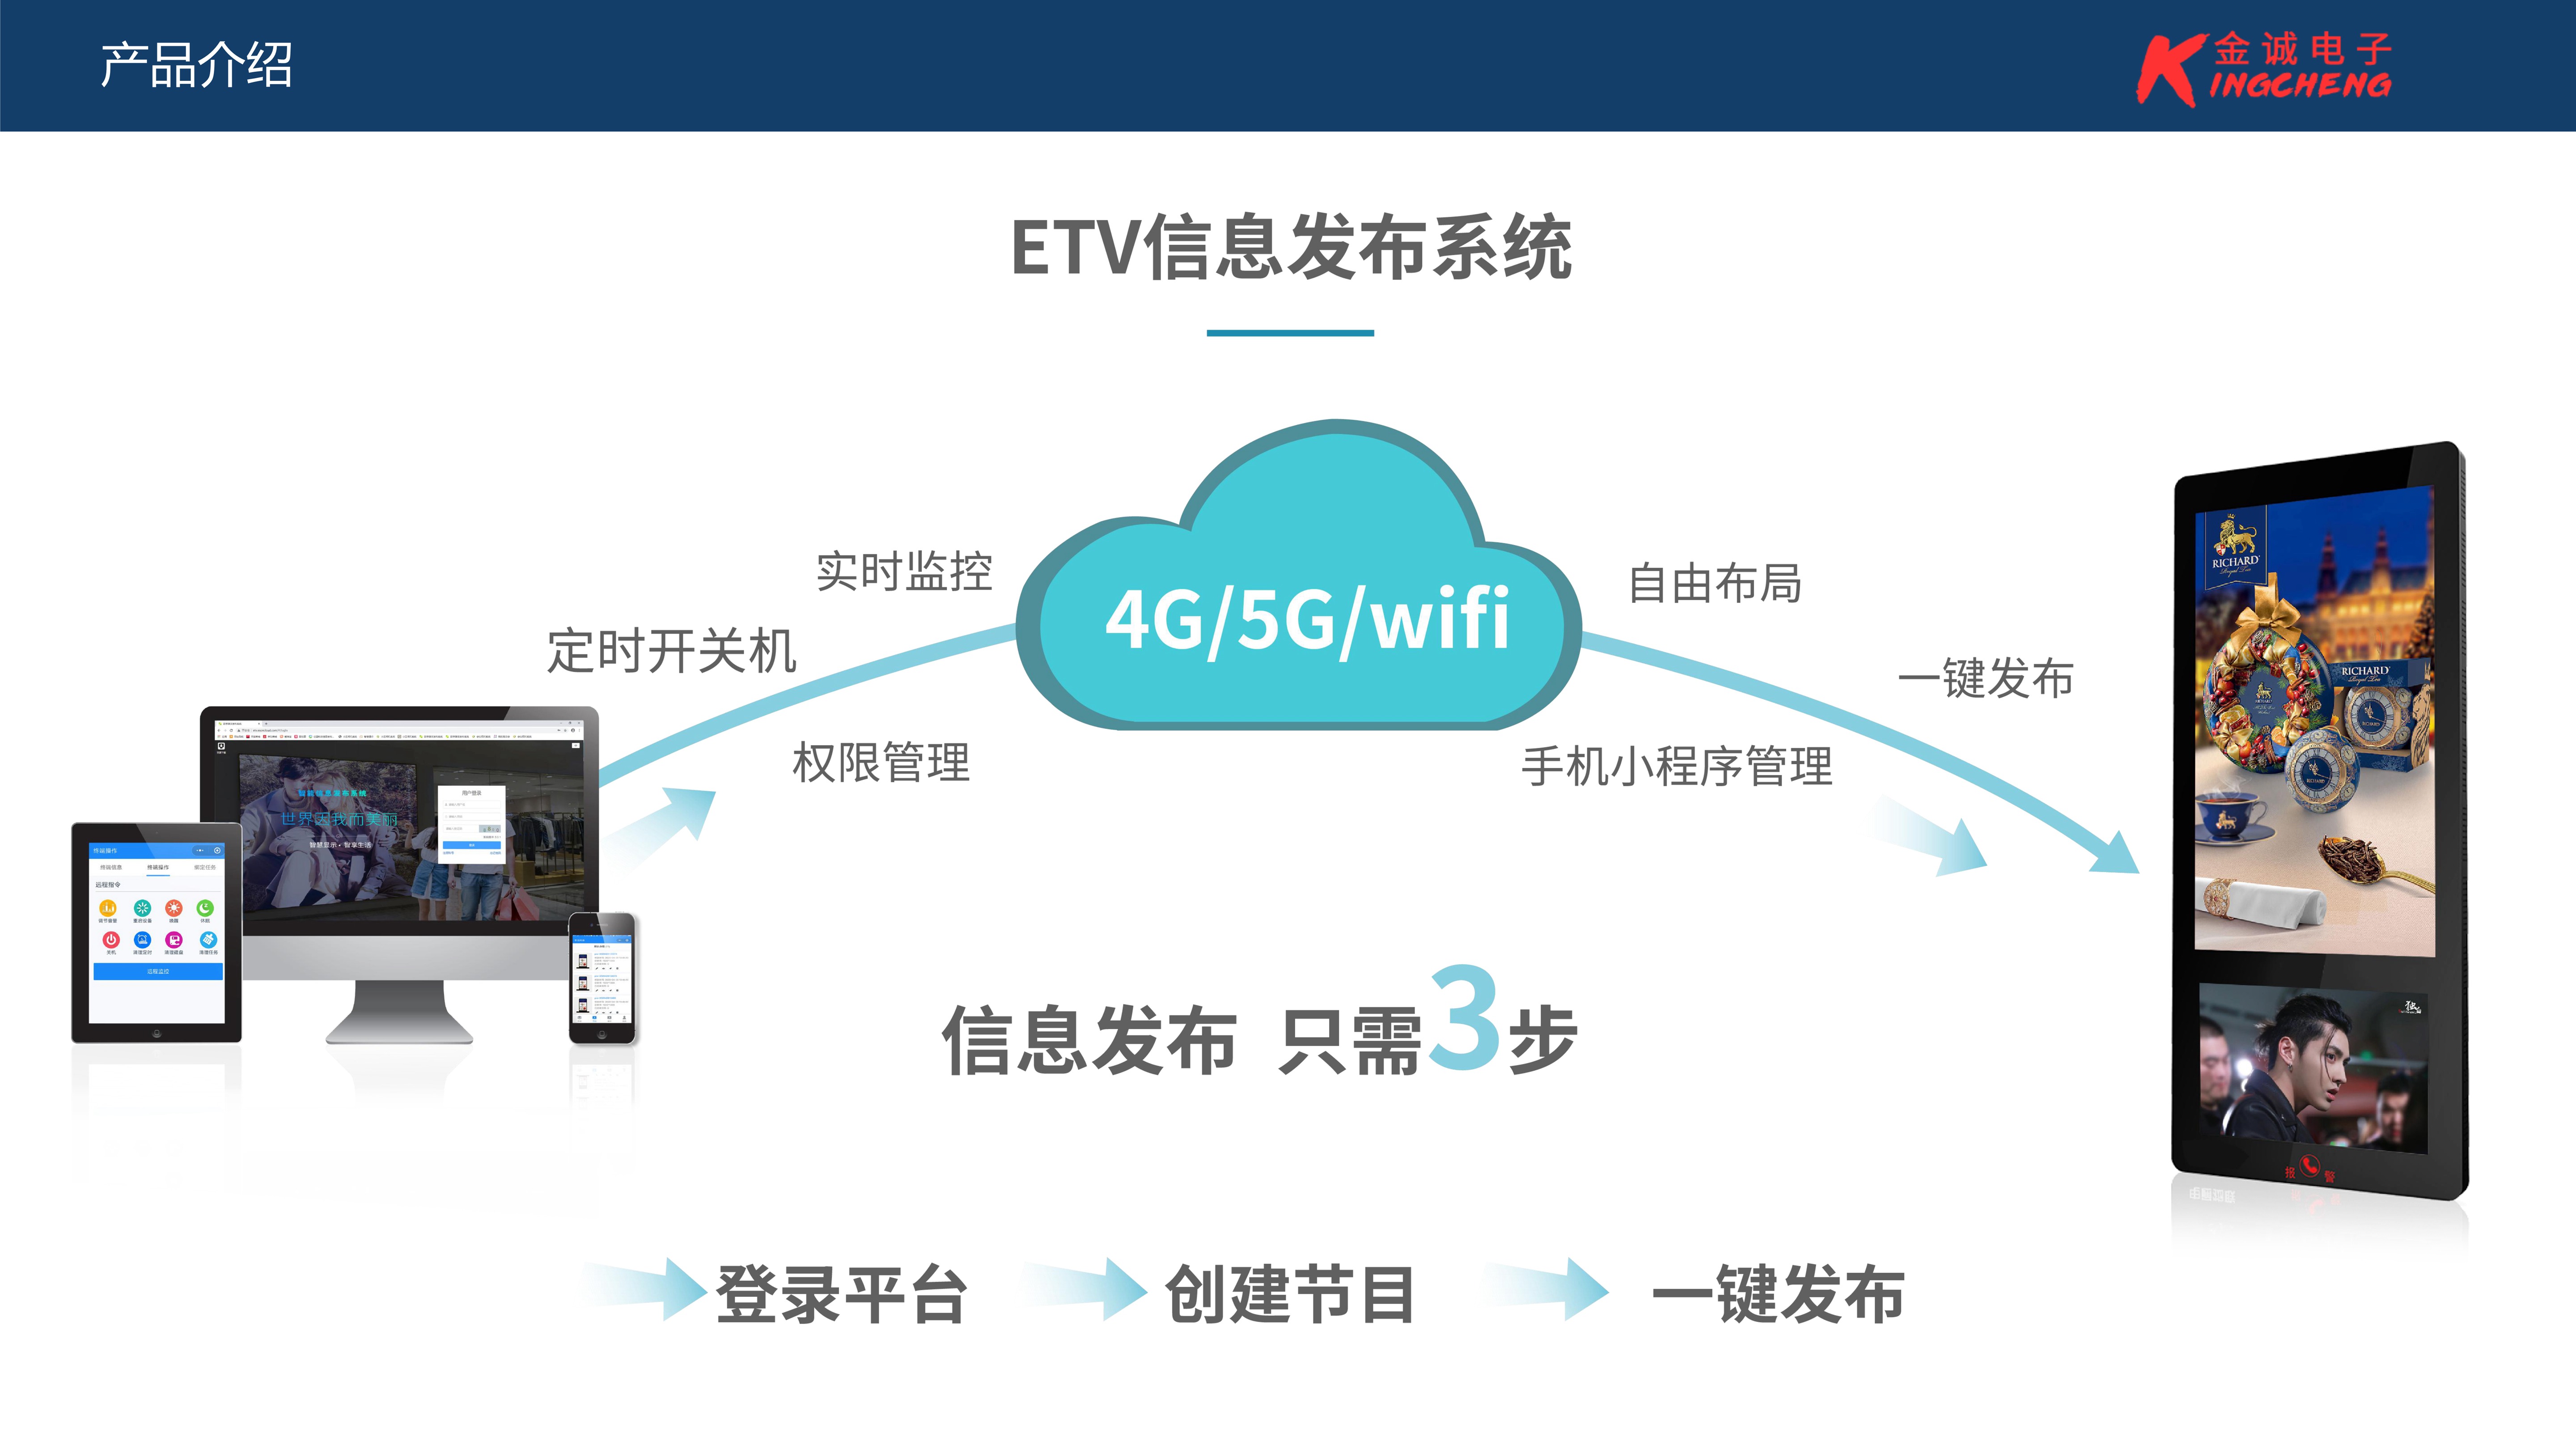 ETV_信息发布系统 产品功能介绍_4.jpg